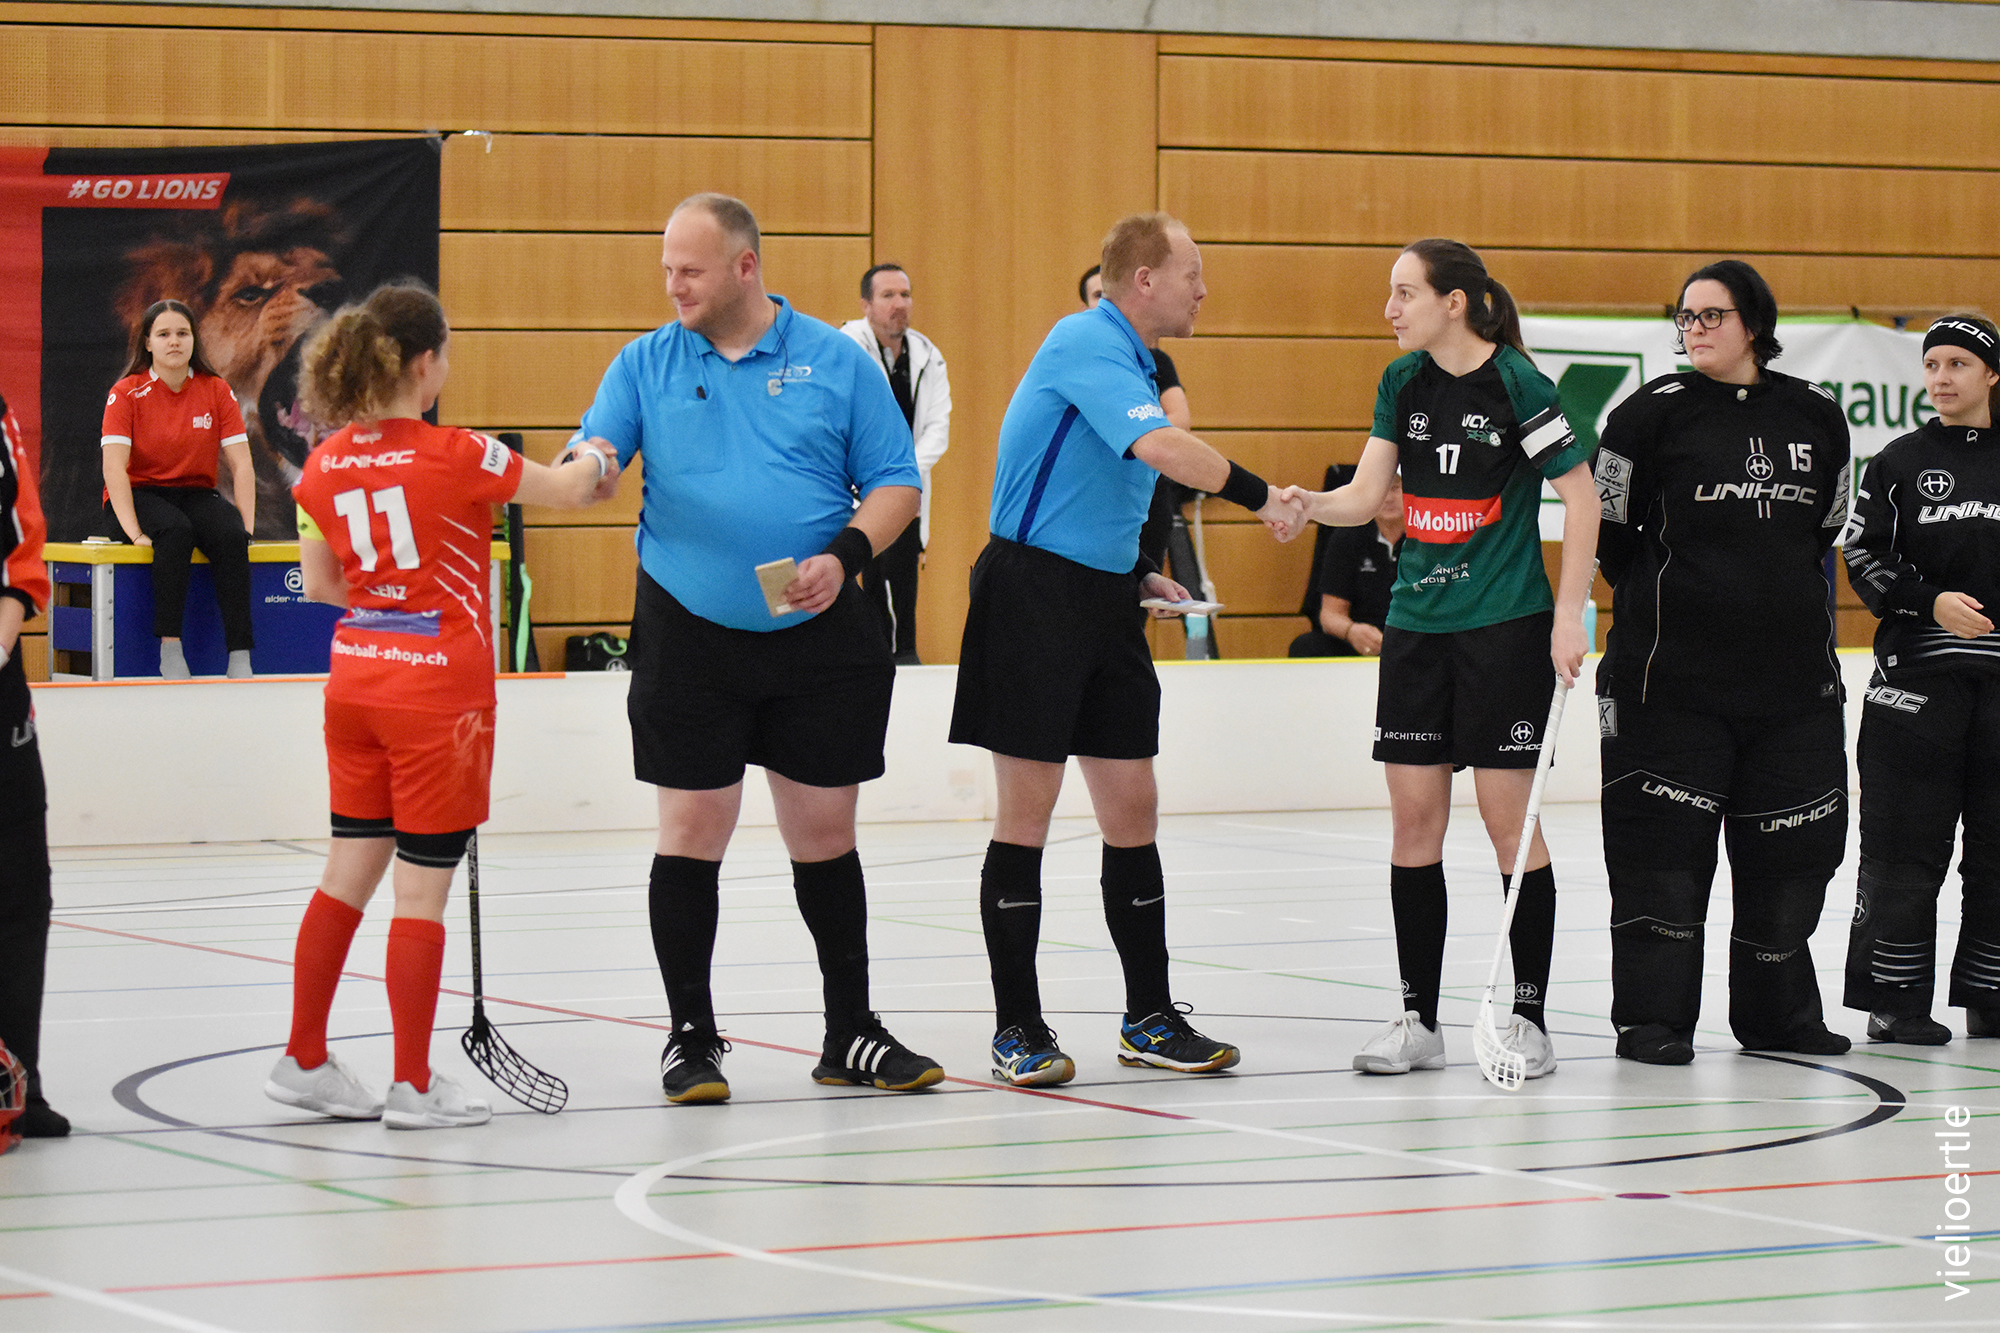 Week of the Referee: Die Spielerinnen bedanken sich bei den Schiedsrichtern für ihren Einsatz.